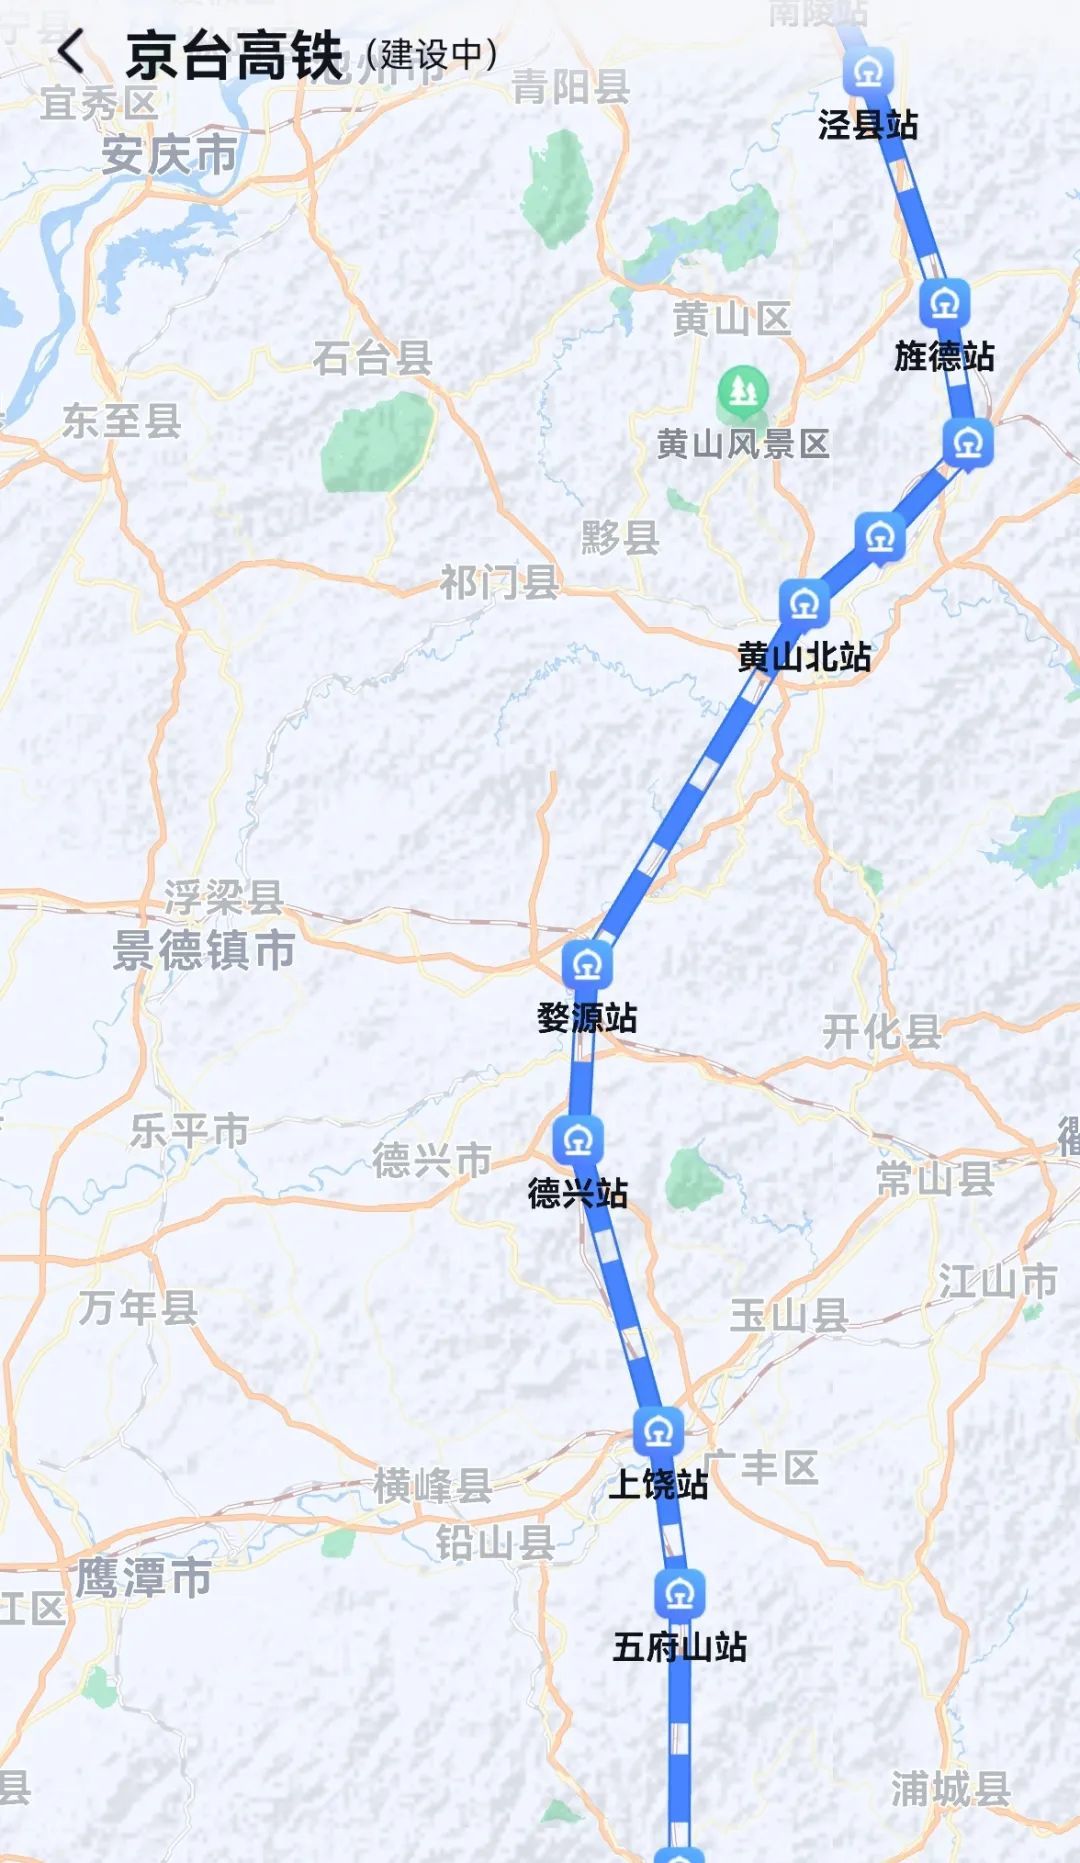 地图已可显示京台高铁线路图!